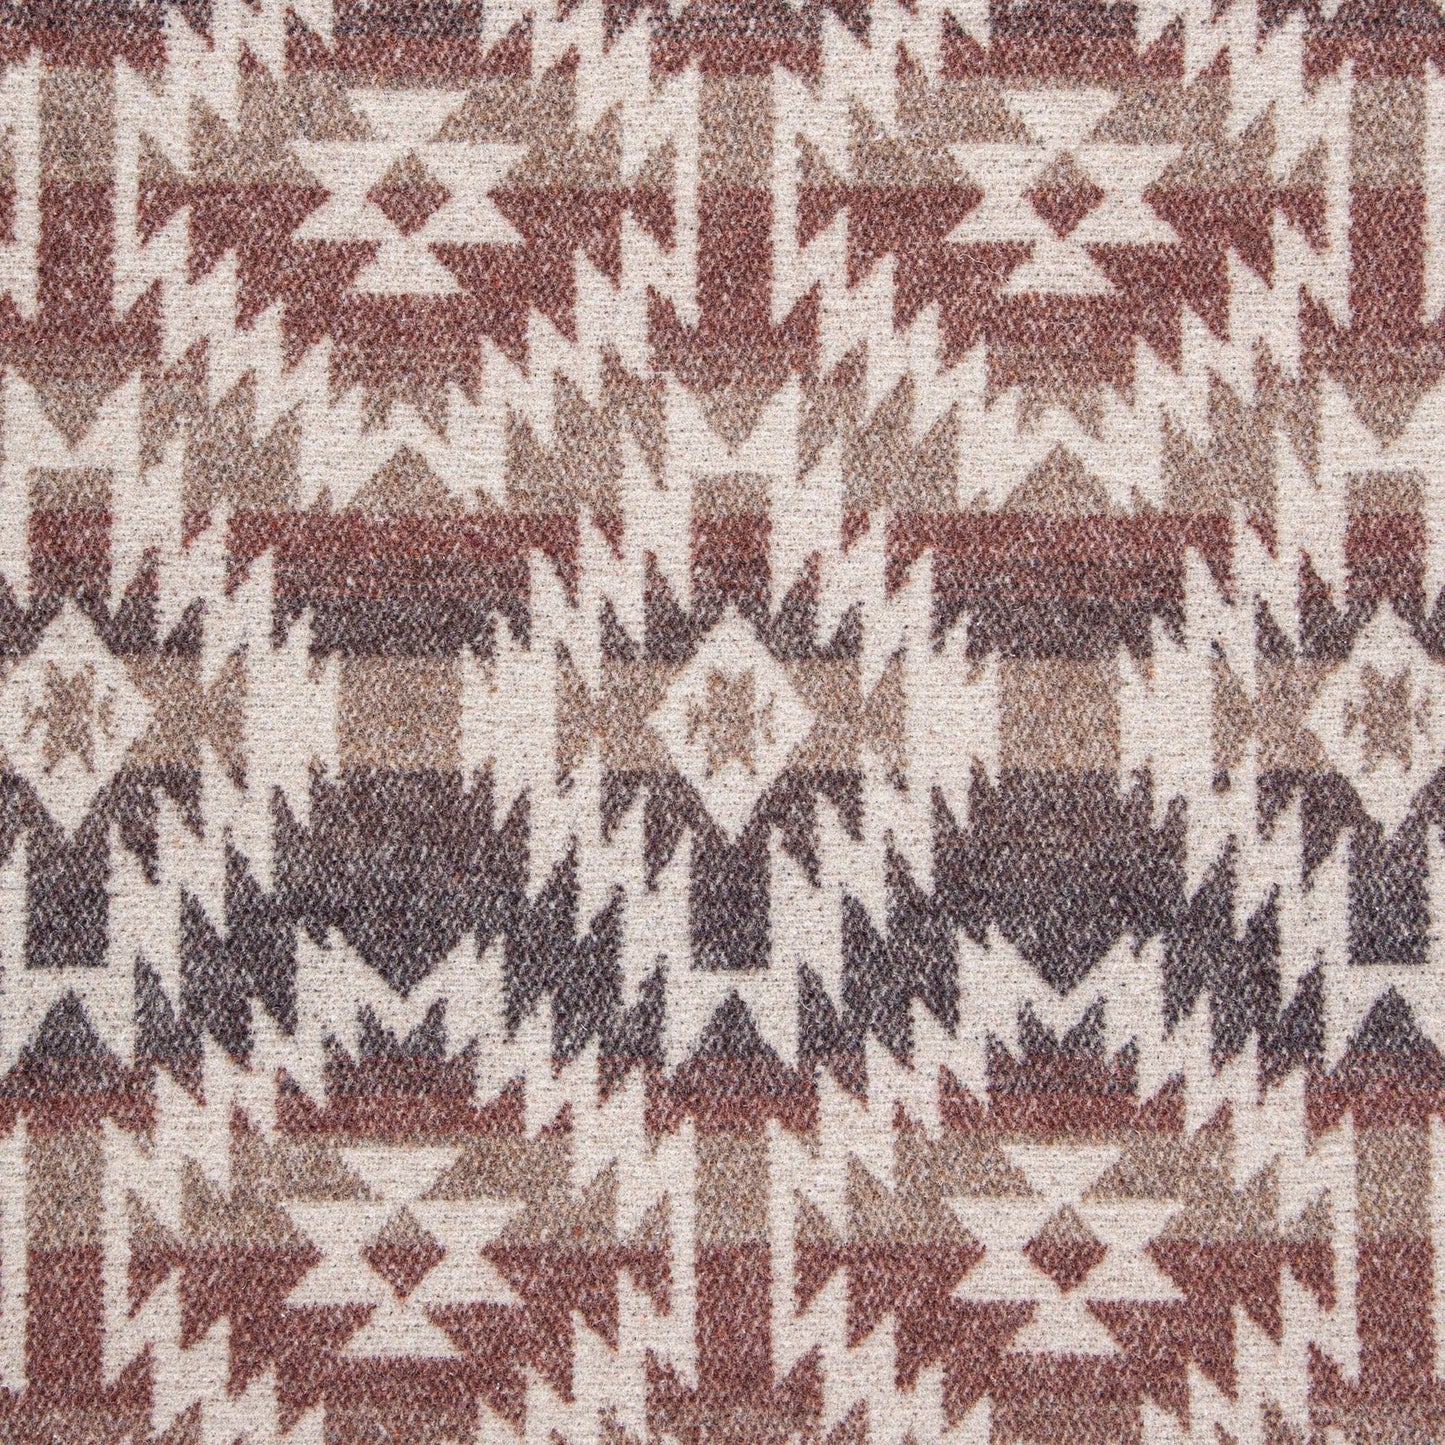 Mesa Wool Blanket by Paseo Road